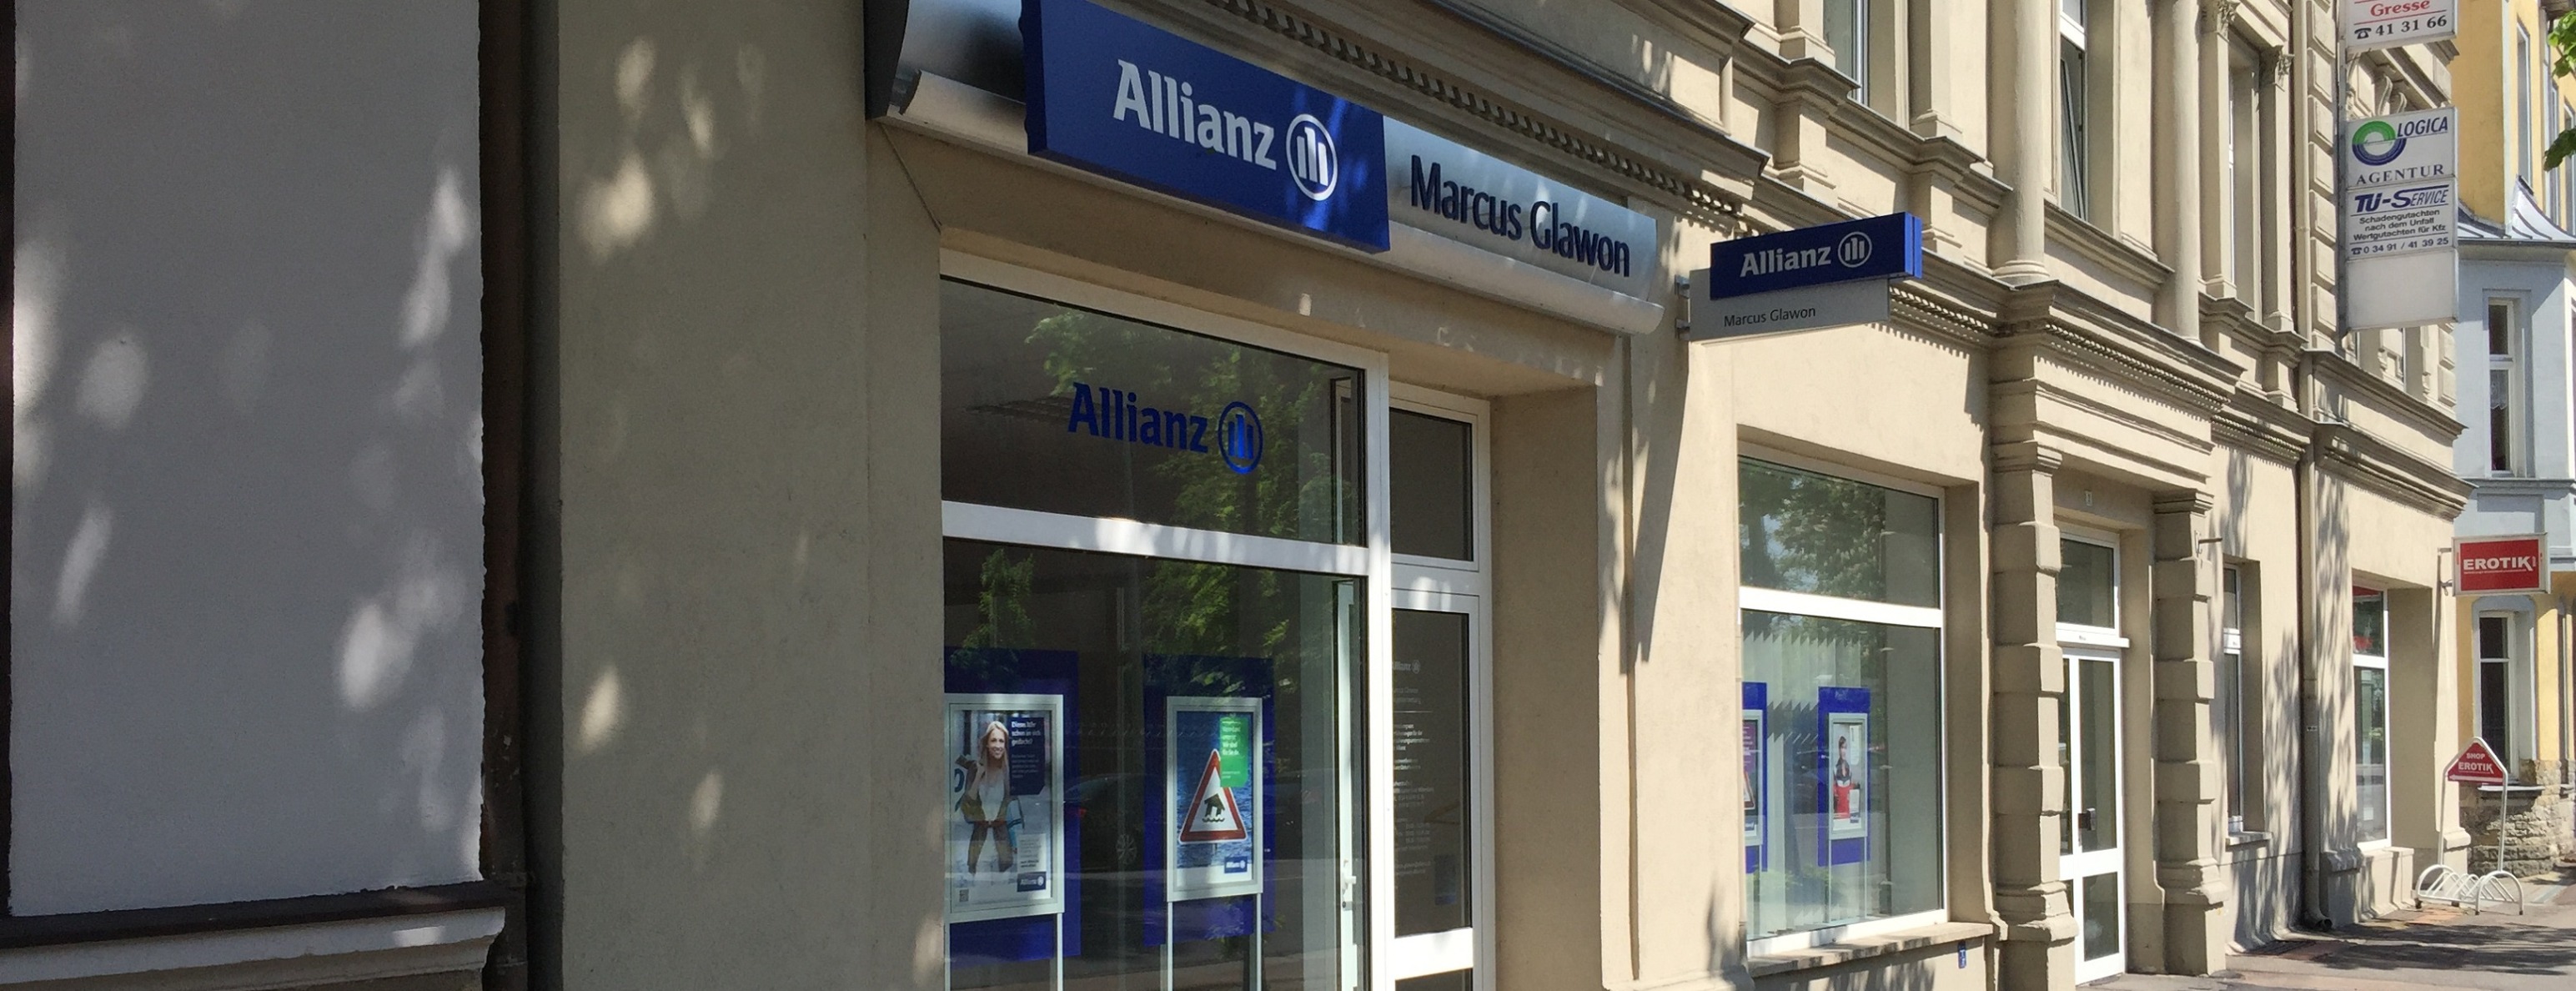 Allianz Versicherung Marcus Glawon Lutherstadt Wittenberg - Allianz Glawon Wittenberg Eingang